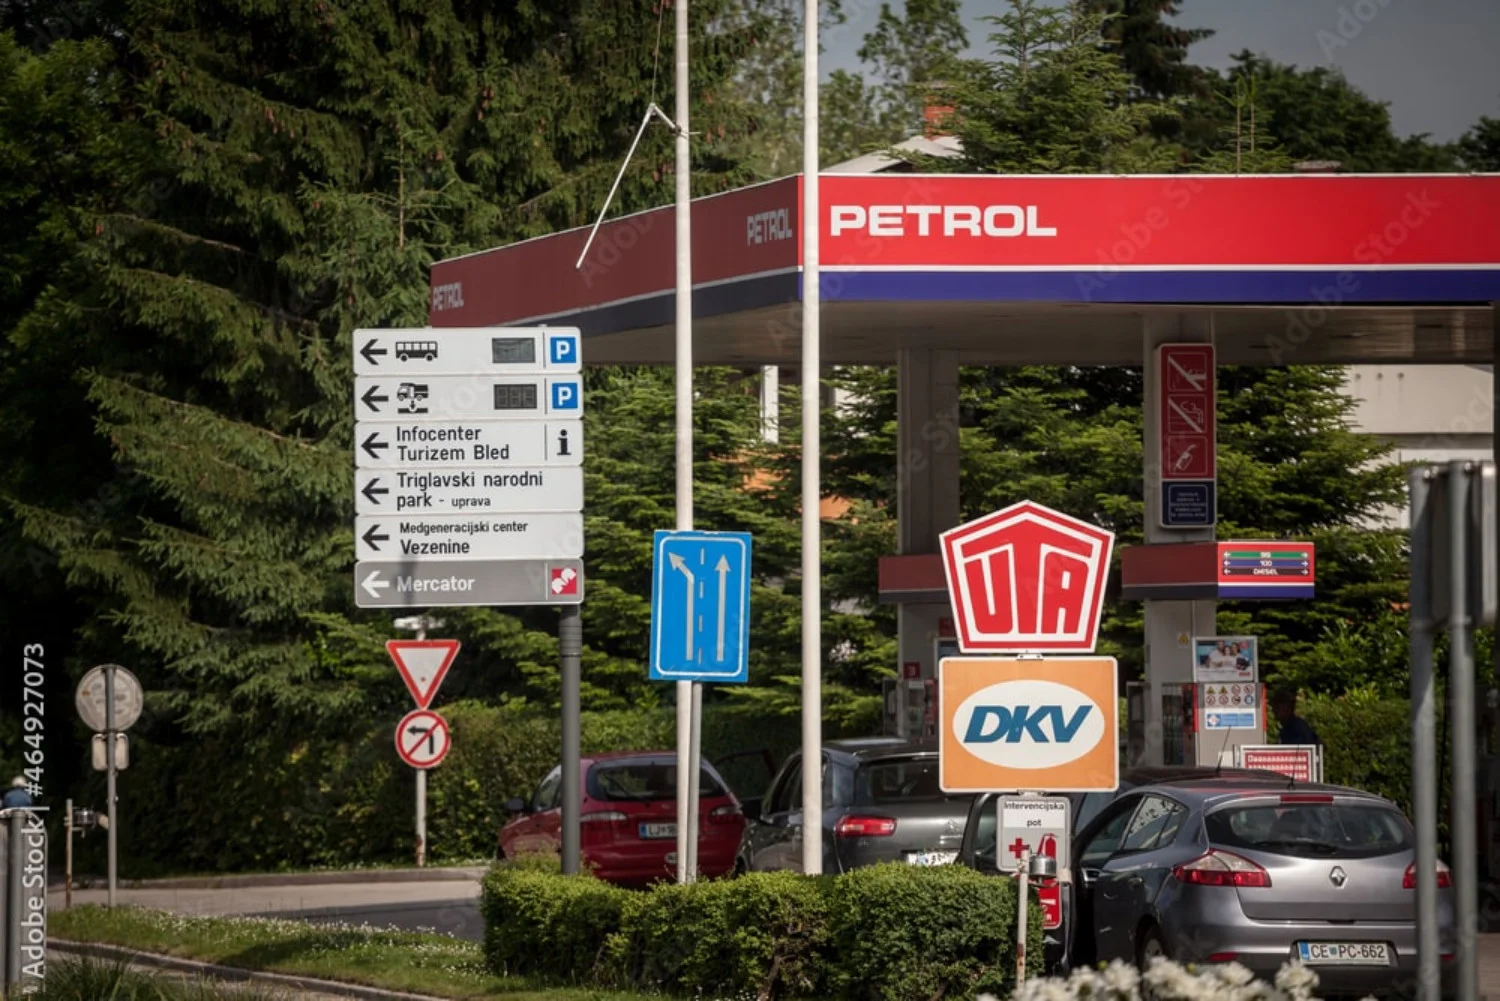 Една от водещите марки бензиностанции в Словения , Petrol се счита за благонадеждна.